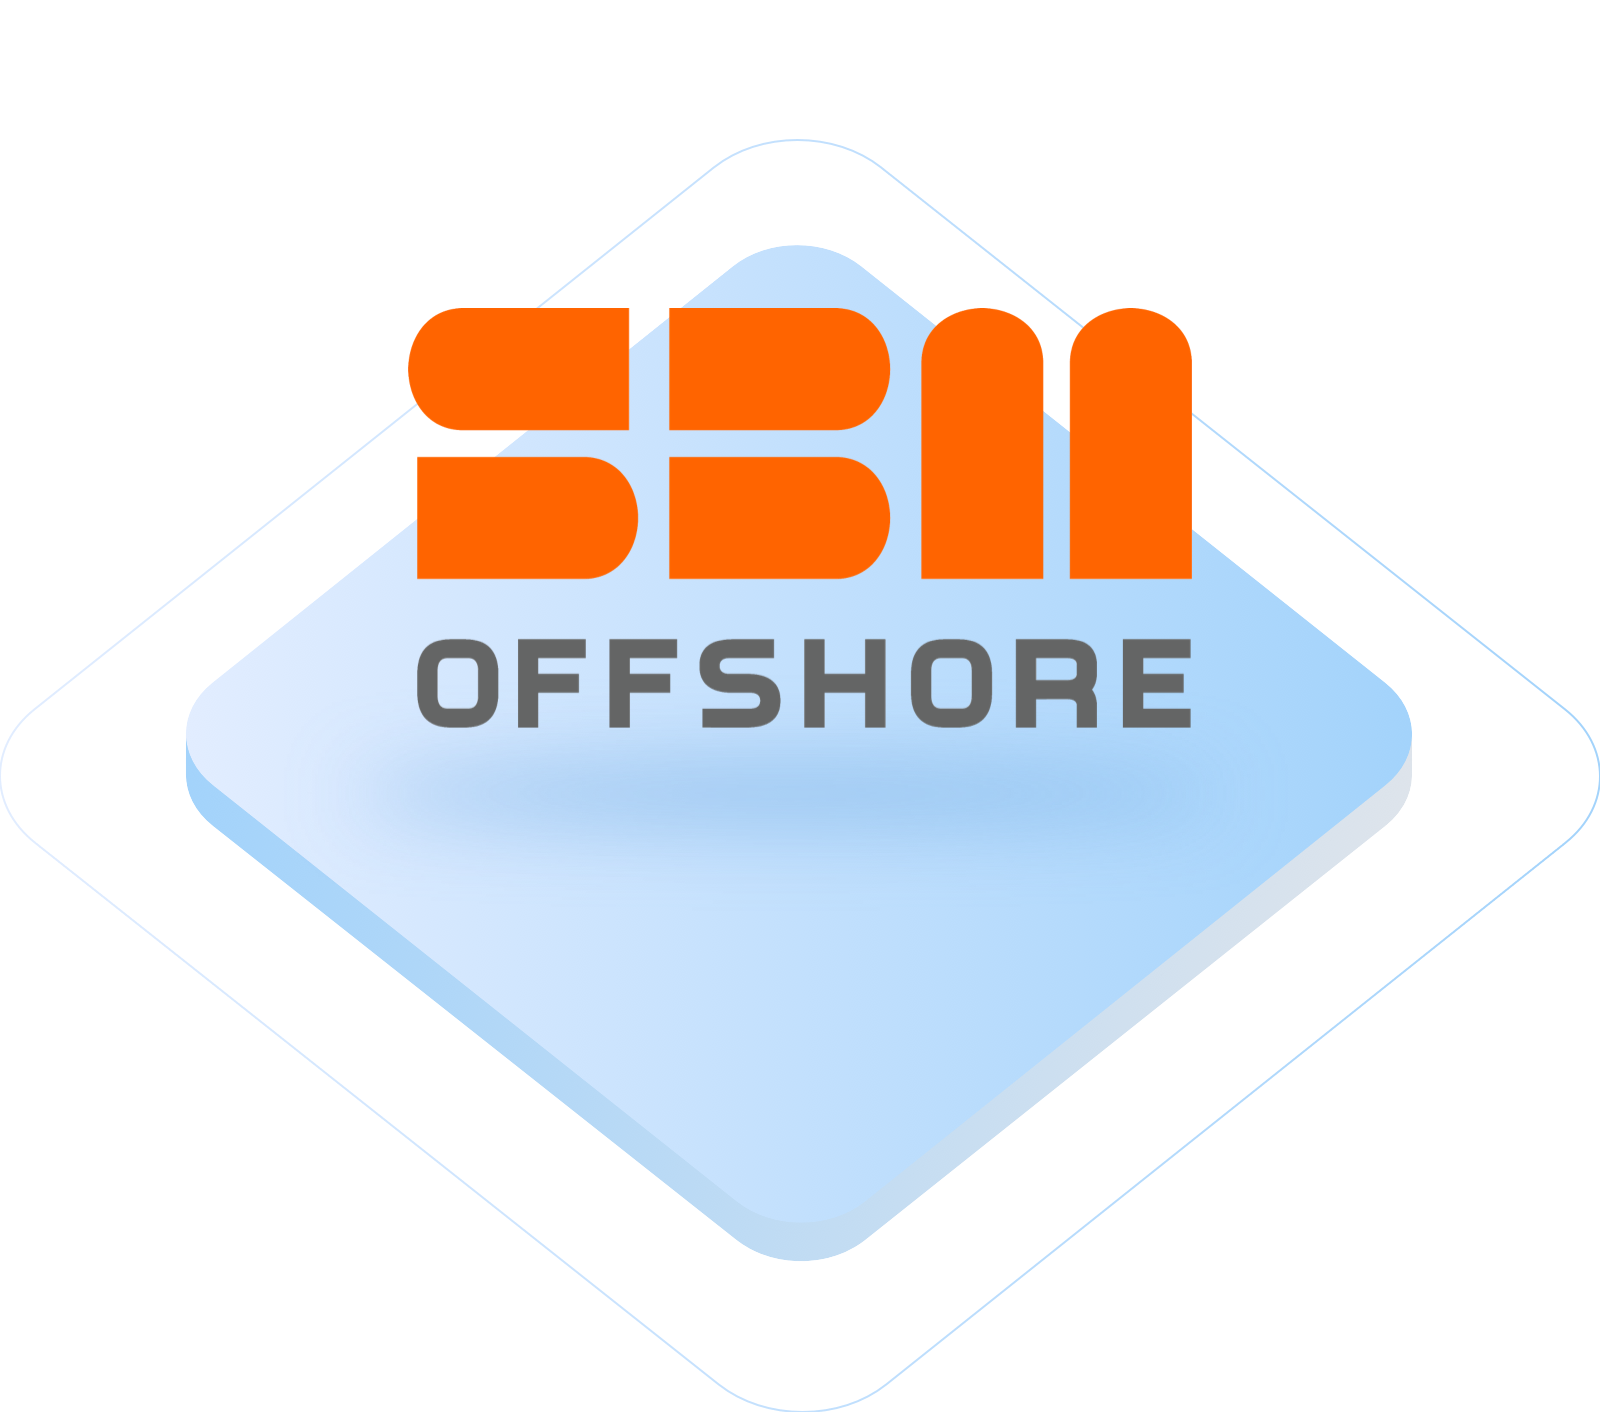 Offshore VPS